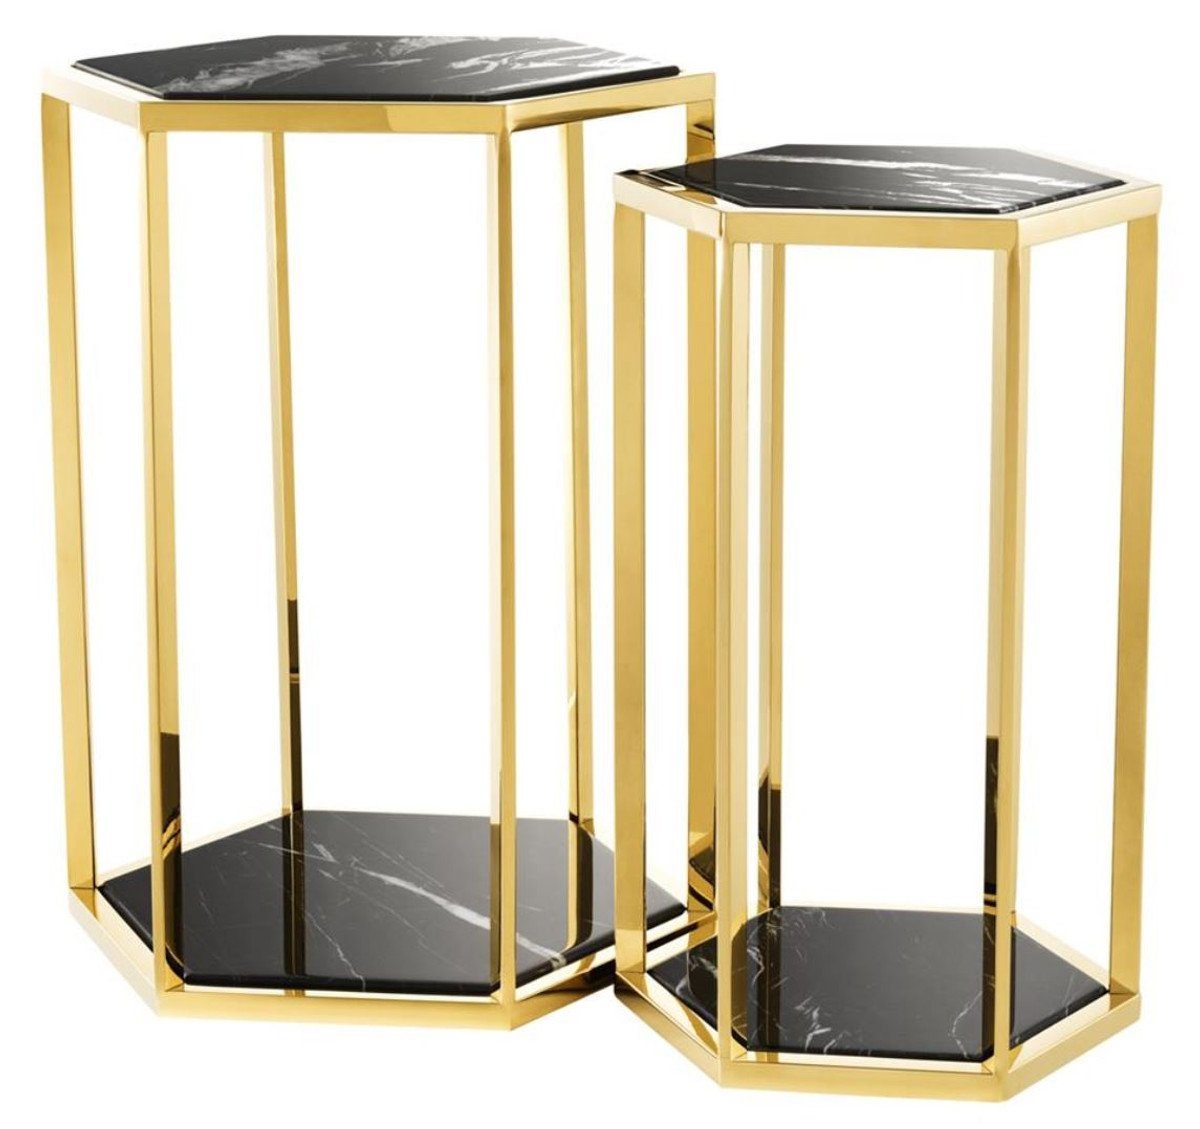 Casa Padrino Beistelltisch Luxus Beistelltisch 2er Set in gold mit schwarzem Marmor - Luxus Qualität